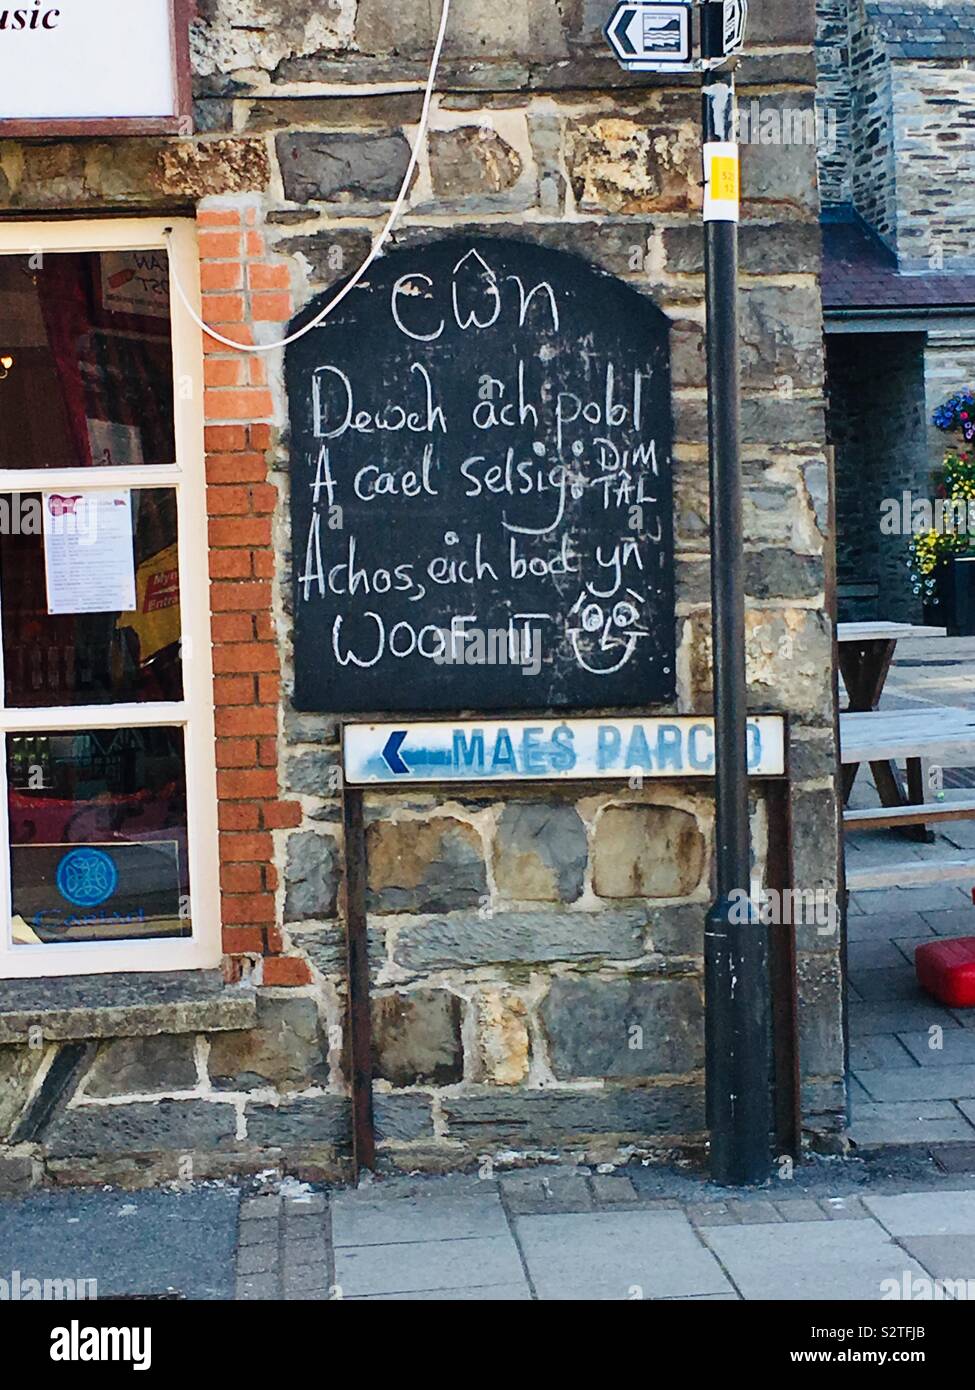 Die walisische Sprache anmelden: 'dogs, deine Menschen bringen. Eine kostenlose Wurst bekommen - weil Sie sie Wuff!" Auf ein Cafe in Cardigan, Wales. Stockfoto